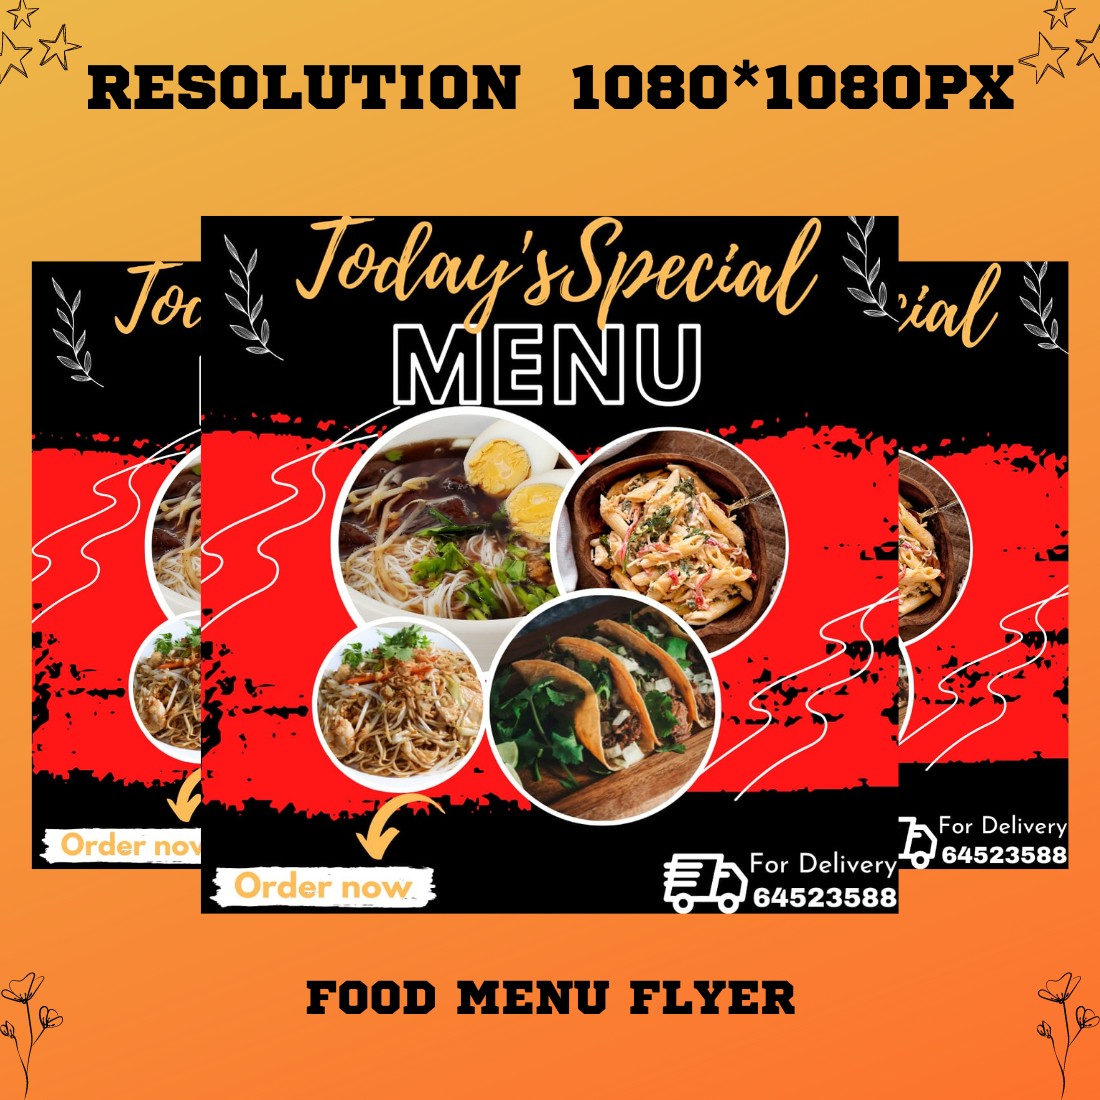 Food Menu Flyer - main image preview.